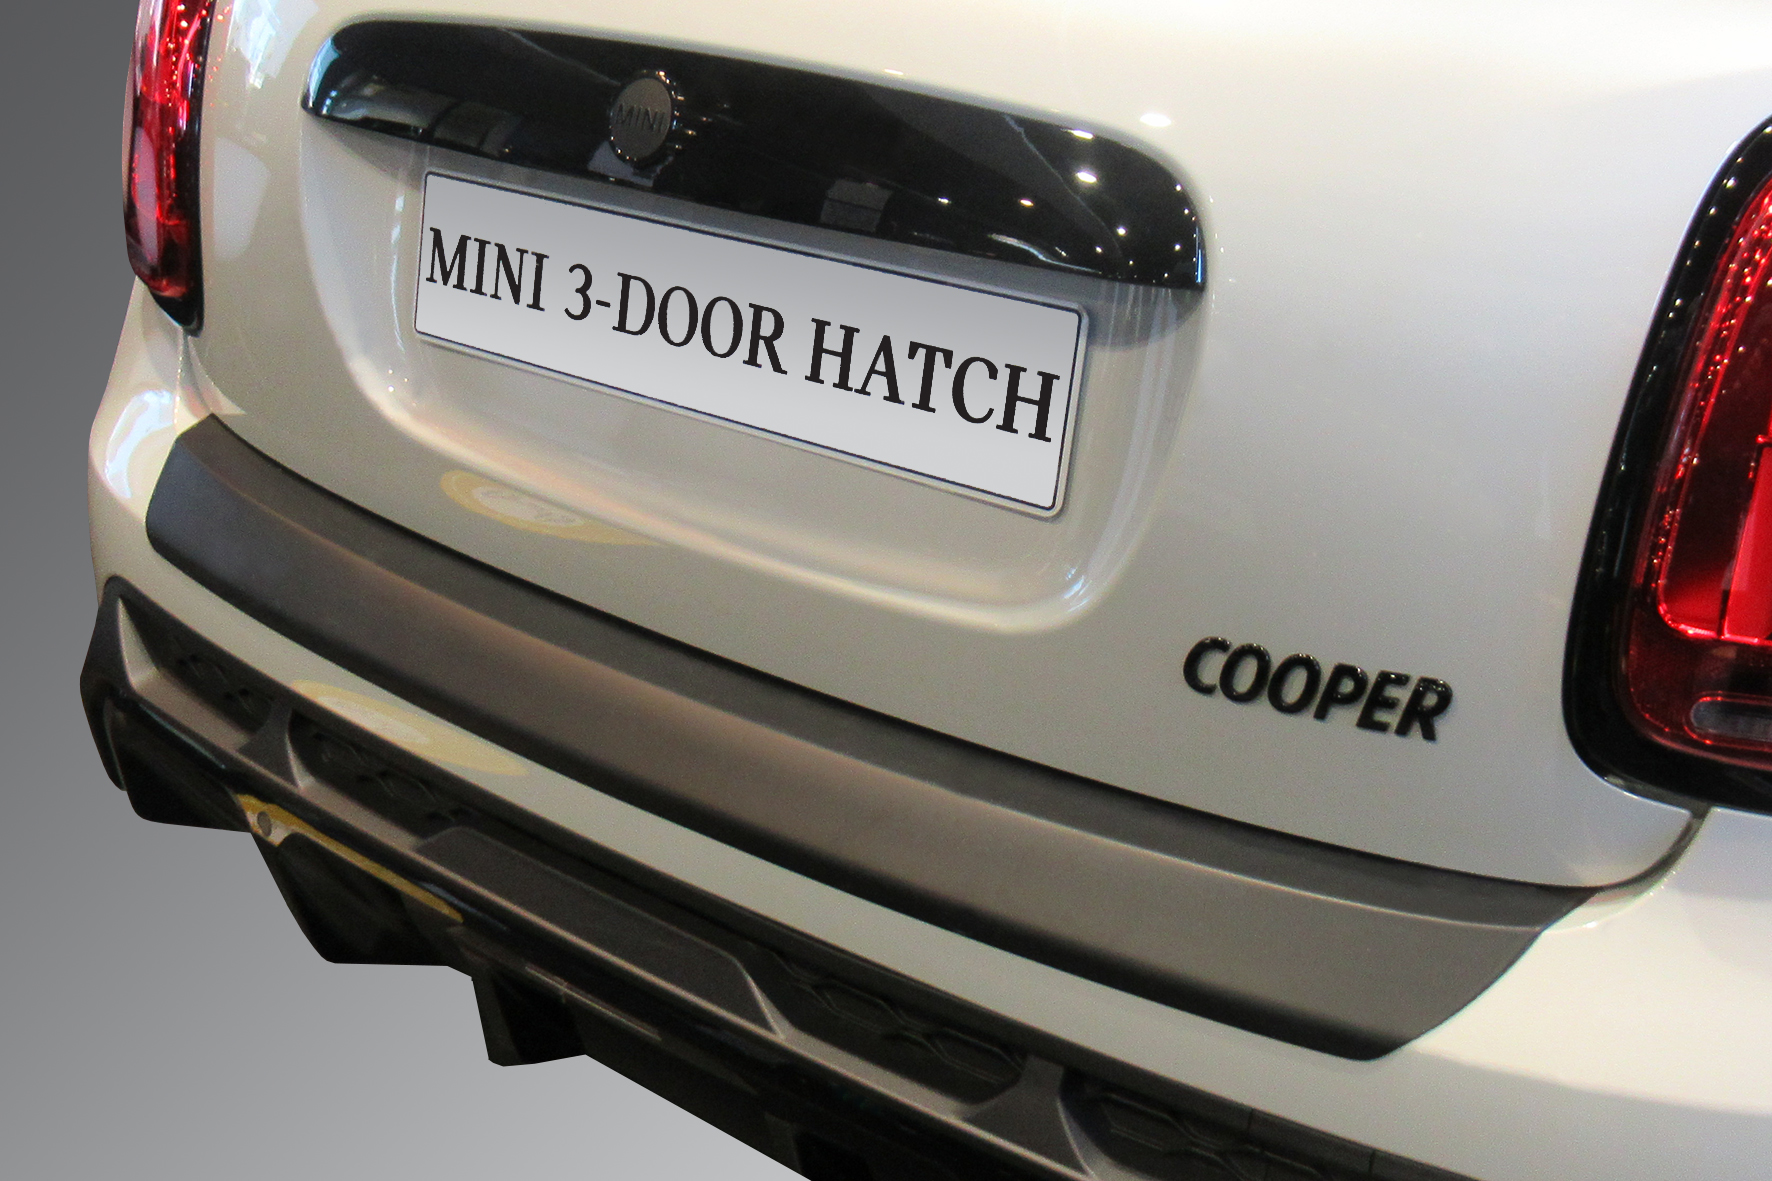 Cabrio One Ihres Ladekantenschutz für Cooper für Fahrzeuges Schutz - und die MINI Ladekante